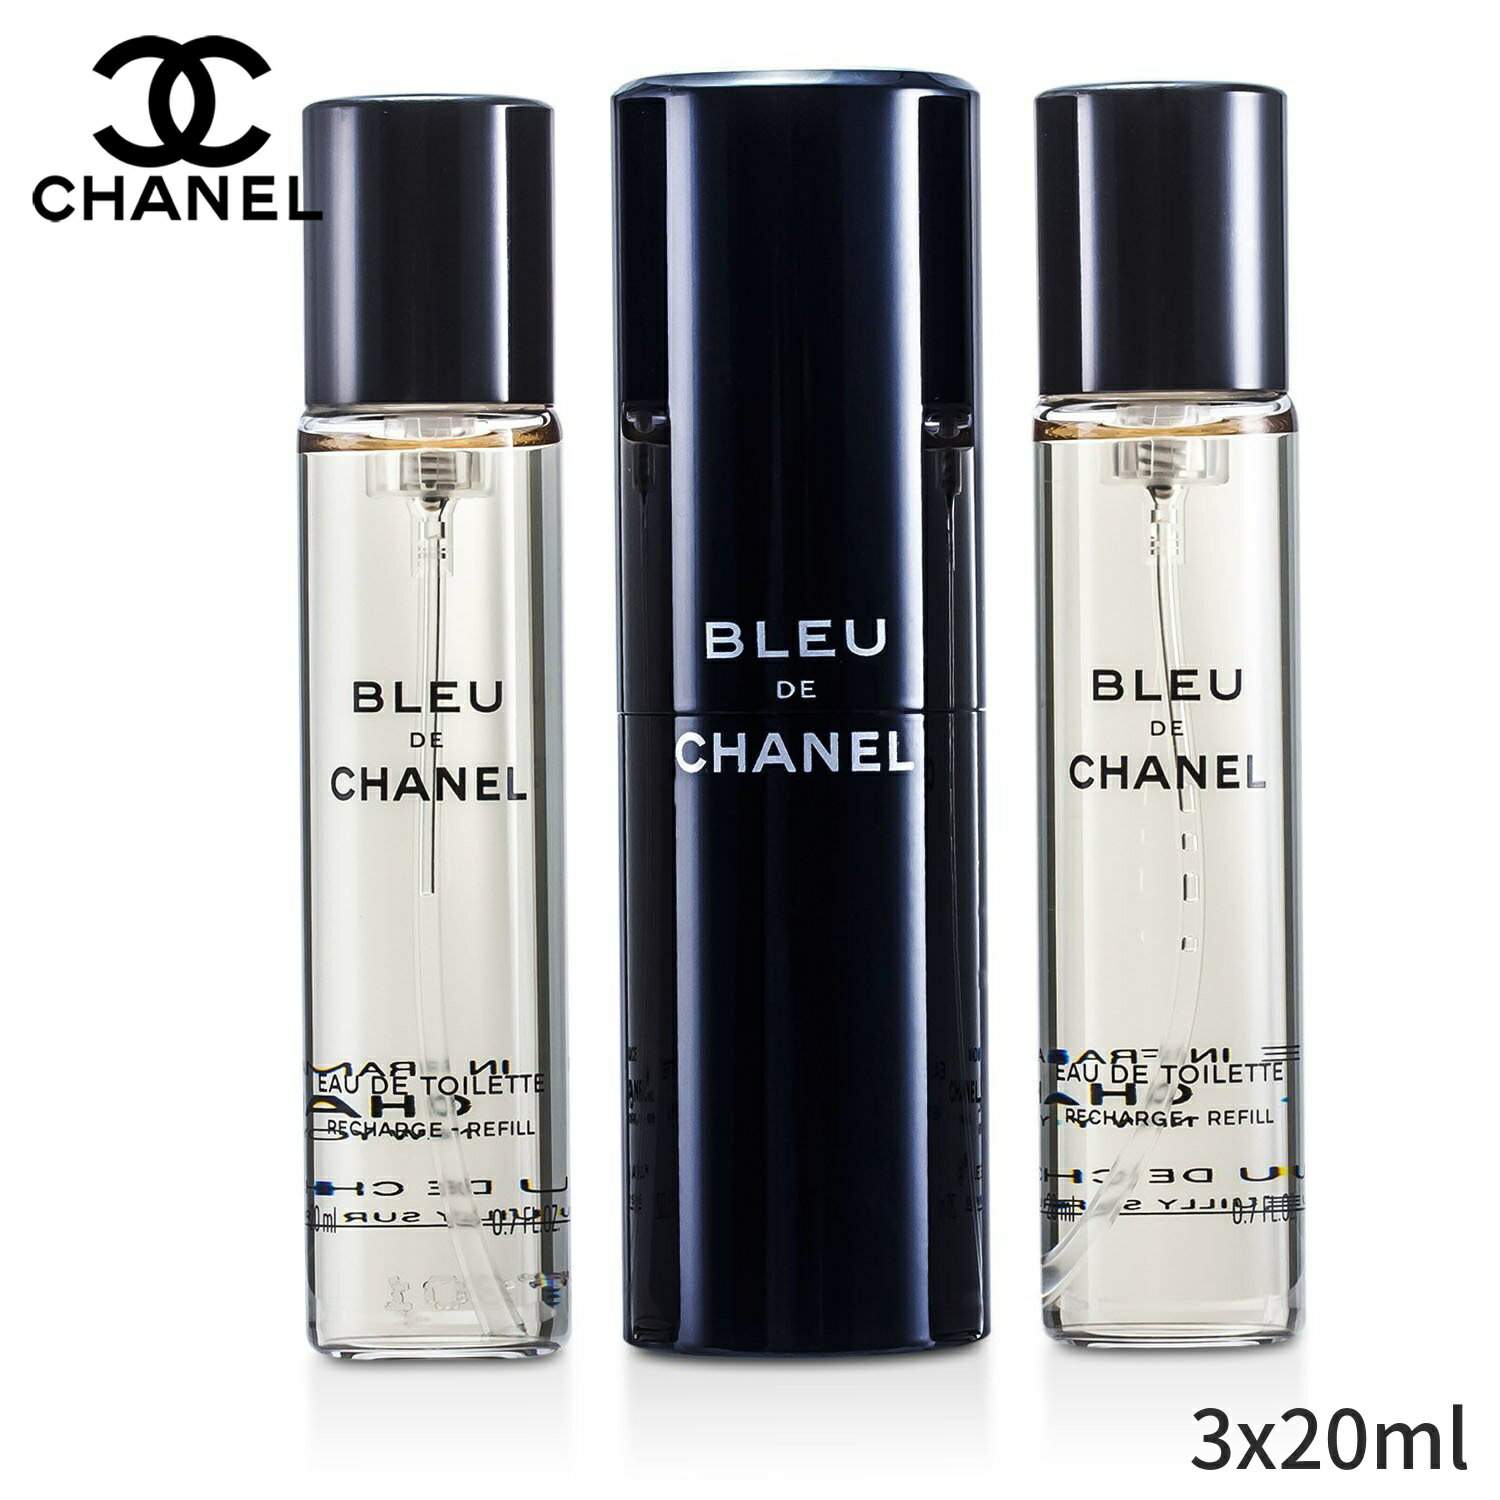 シャネル 香水 Chanel ブルードゥシャネル EDT トラベル スプレー&レフィル 2本 3x20ml メンズ 男性用 フレグランス 父の日 プレゼント ギフト 2022 人気 ブランド コスメ